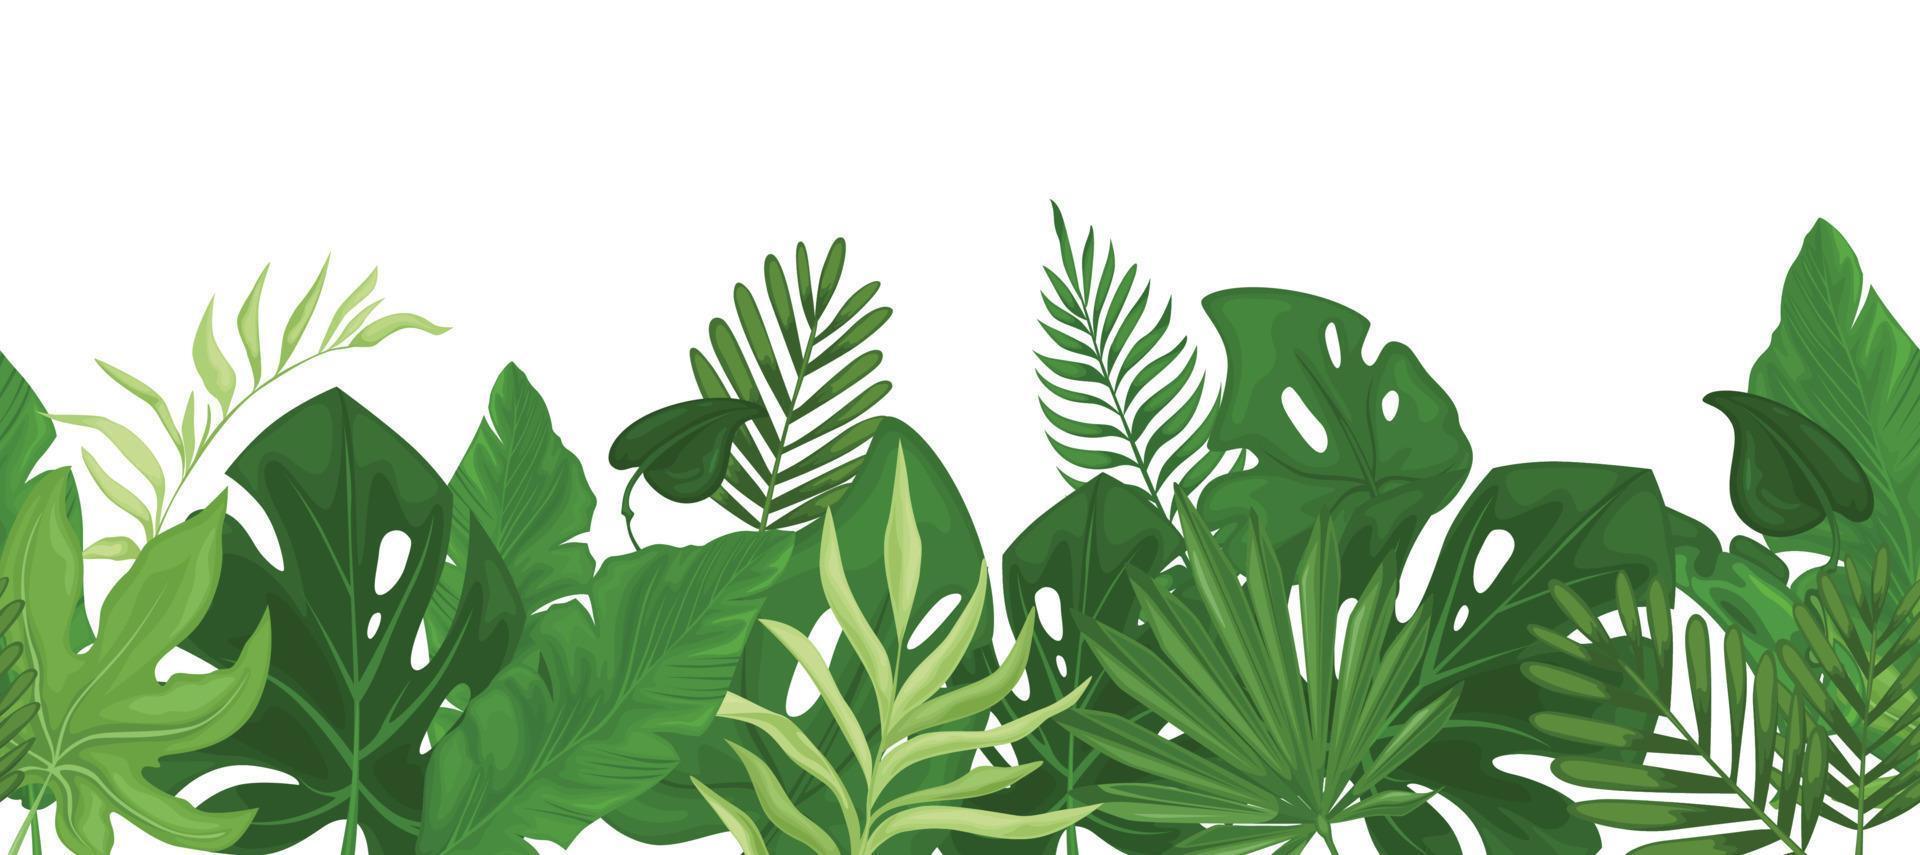 motif tropical de bordure transparente avec des feuilles de palmier. vecteur